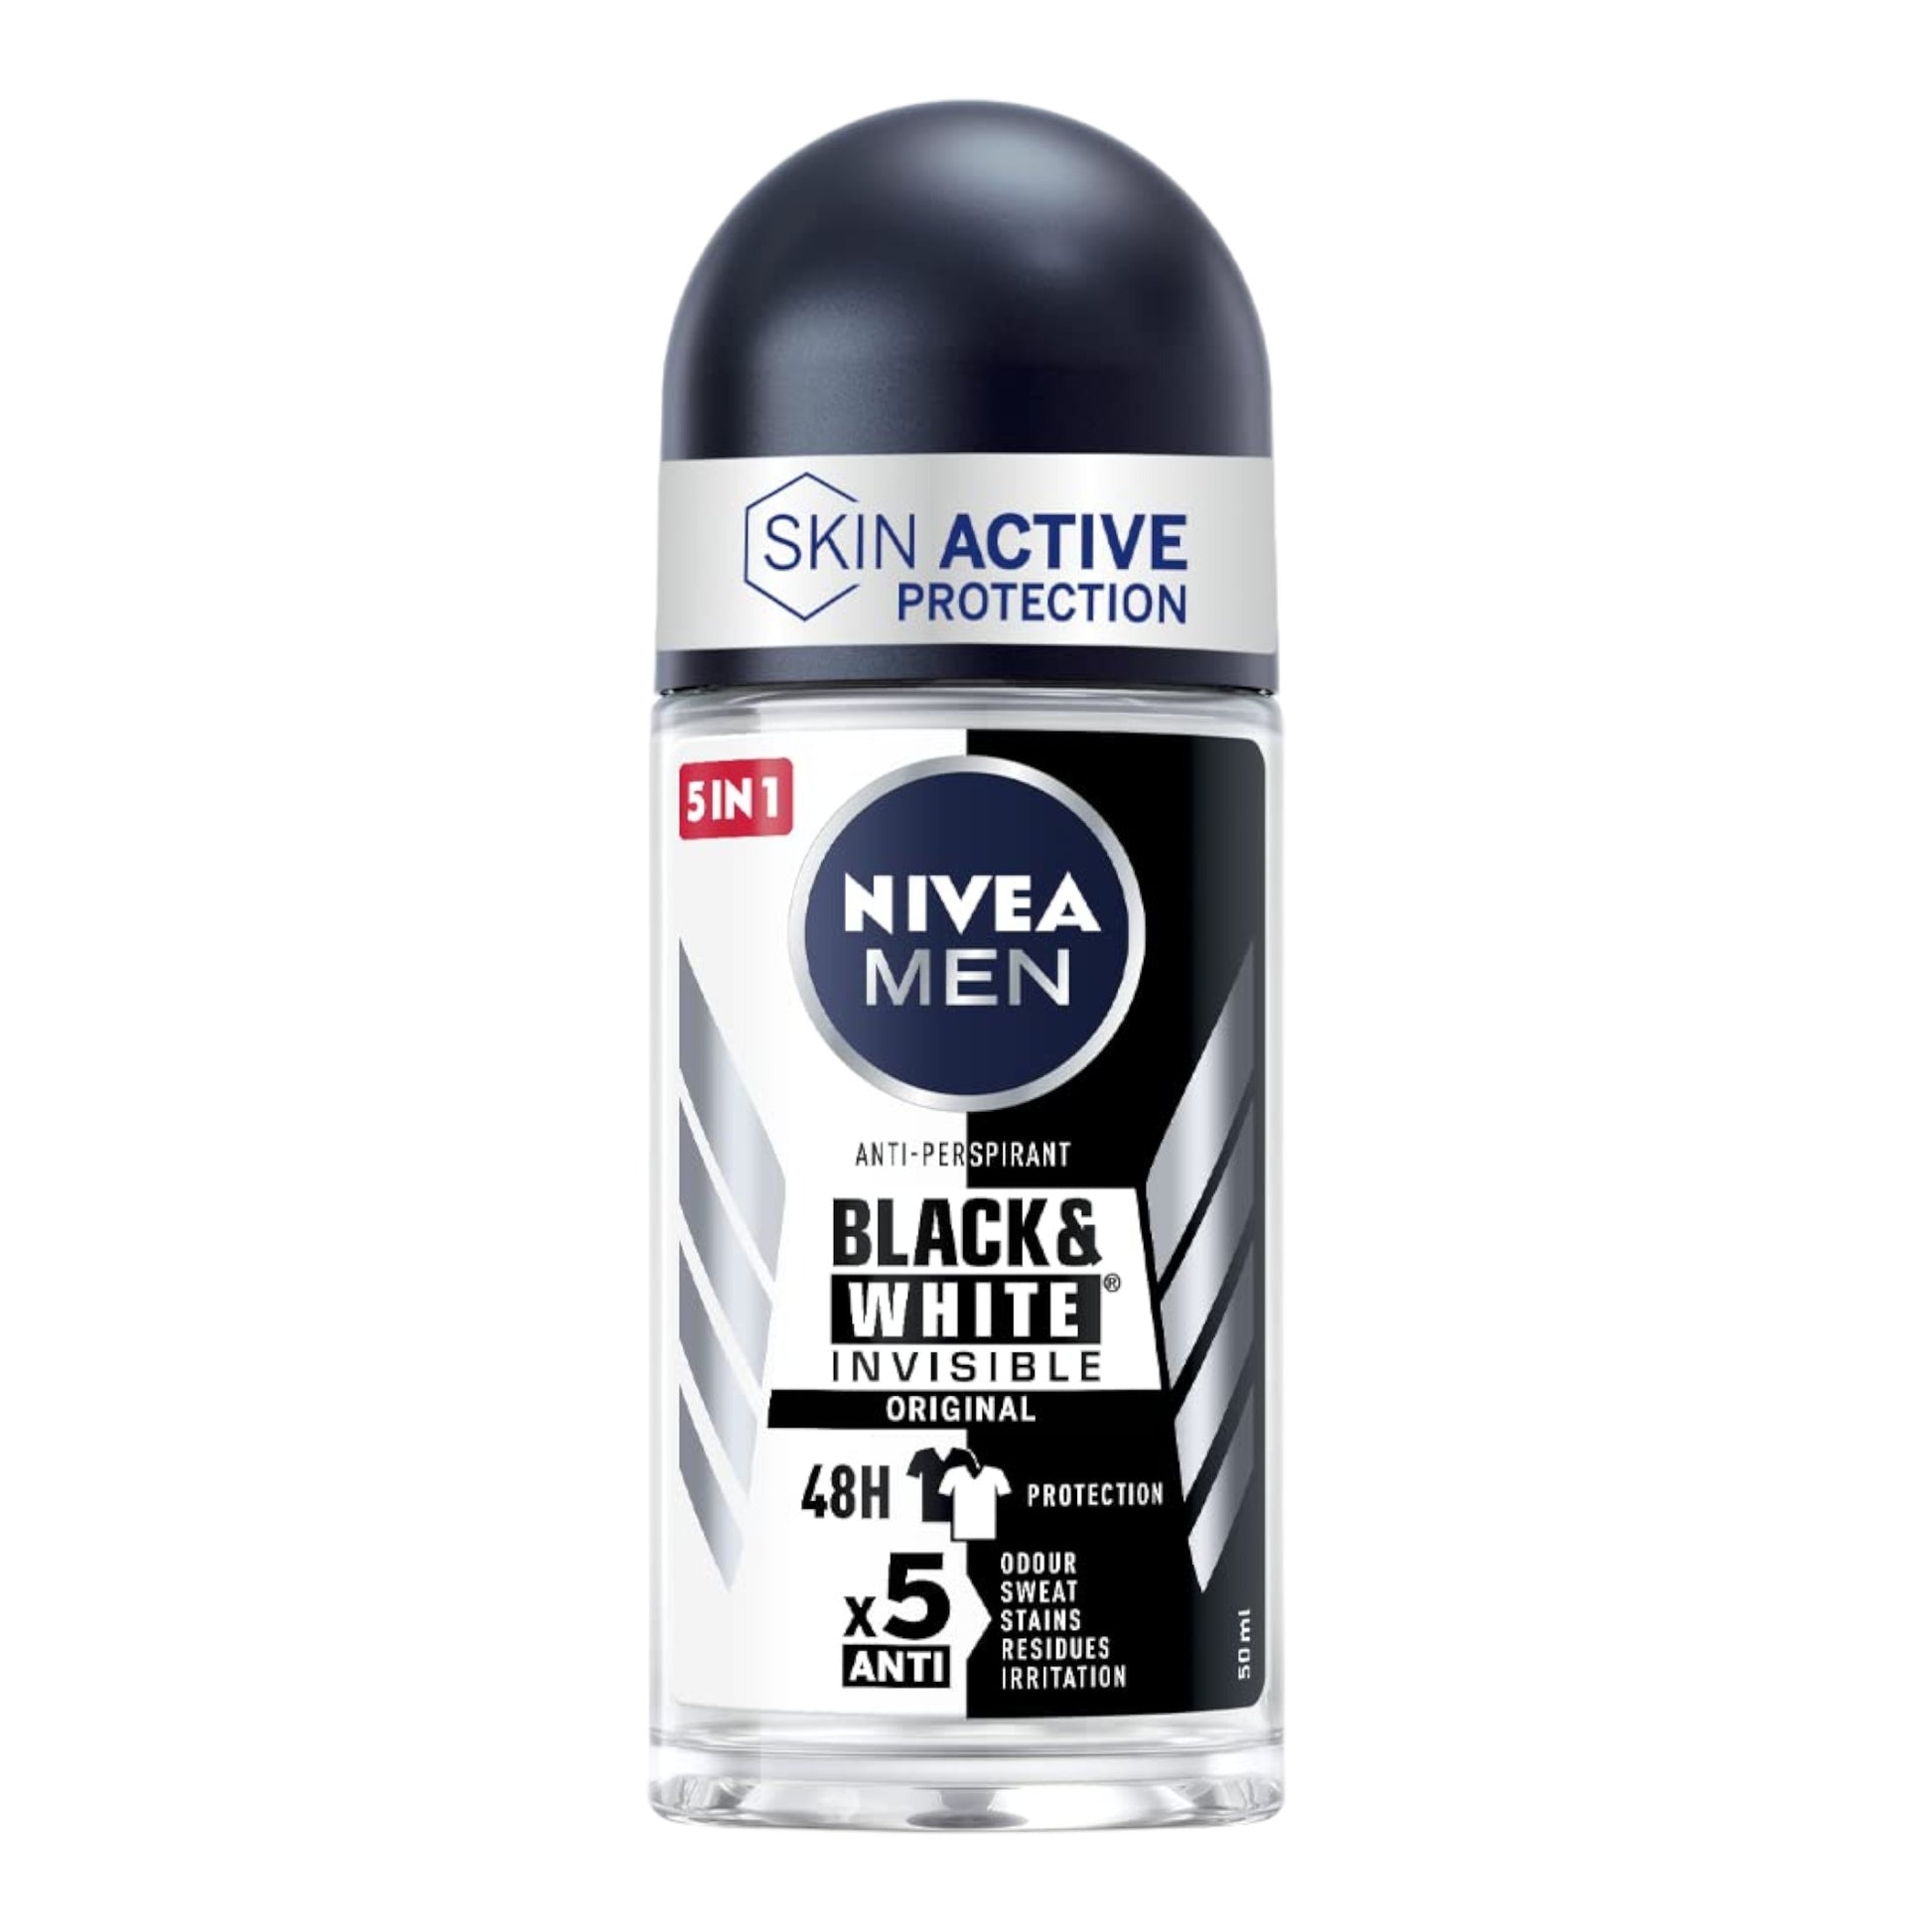 Nivea Men anti-perspirant roll-on Black & White Invisible Original 50ml